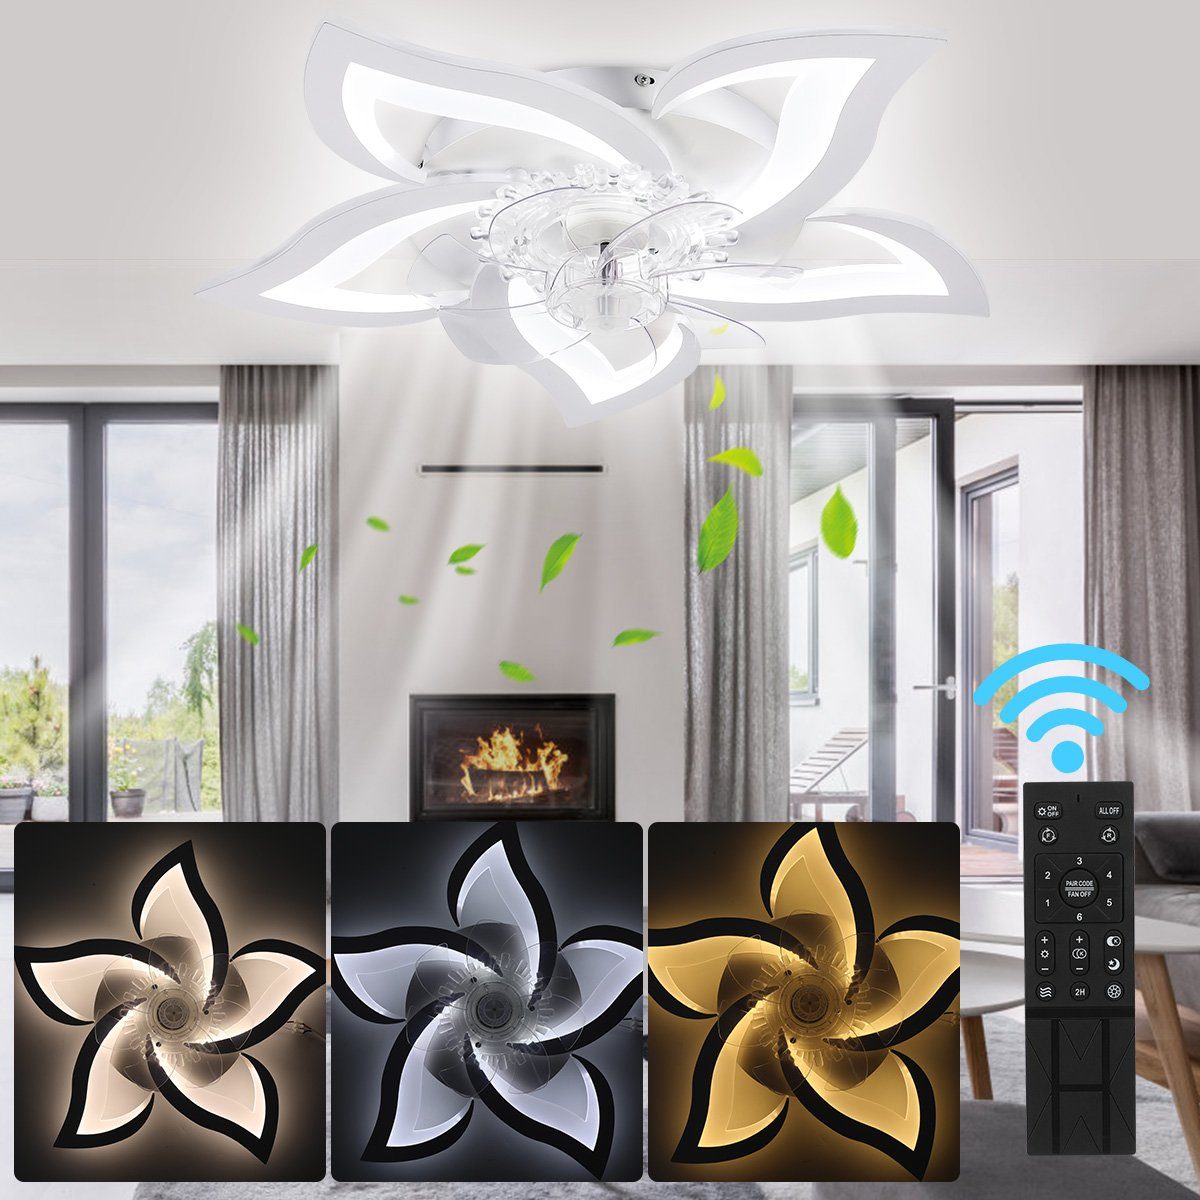 Acryl Deckenleuchte Blumenform integriert, Mit 5000LM, LED fest Leise Warmweiß, Dimmbare, Deckenleuchte Wohnzimmer OULENBIYAR Lampenschirm Beleuchtung, LED Lampen Fernbedienung, Kaltweiß, 60W Naturweiß, Deckenventilator